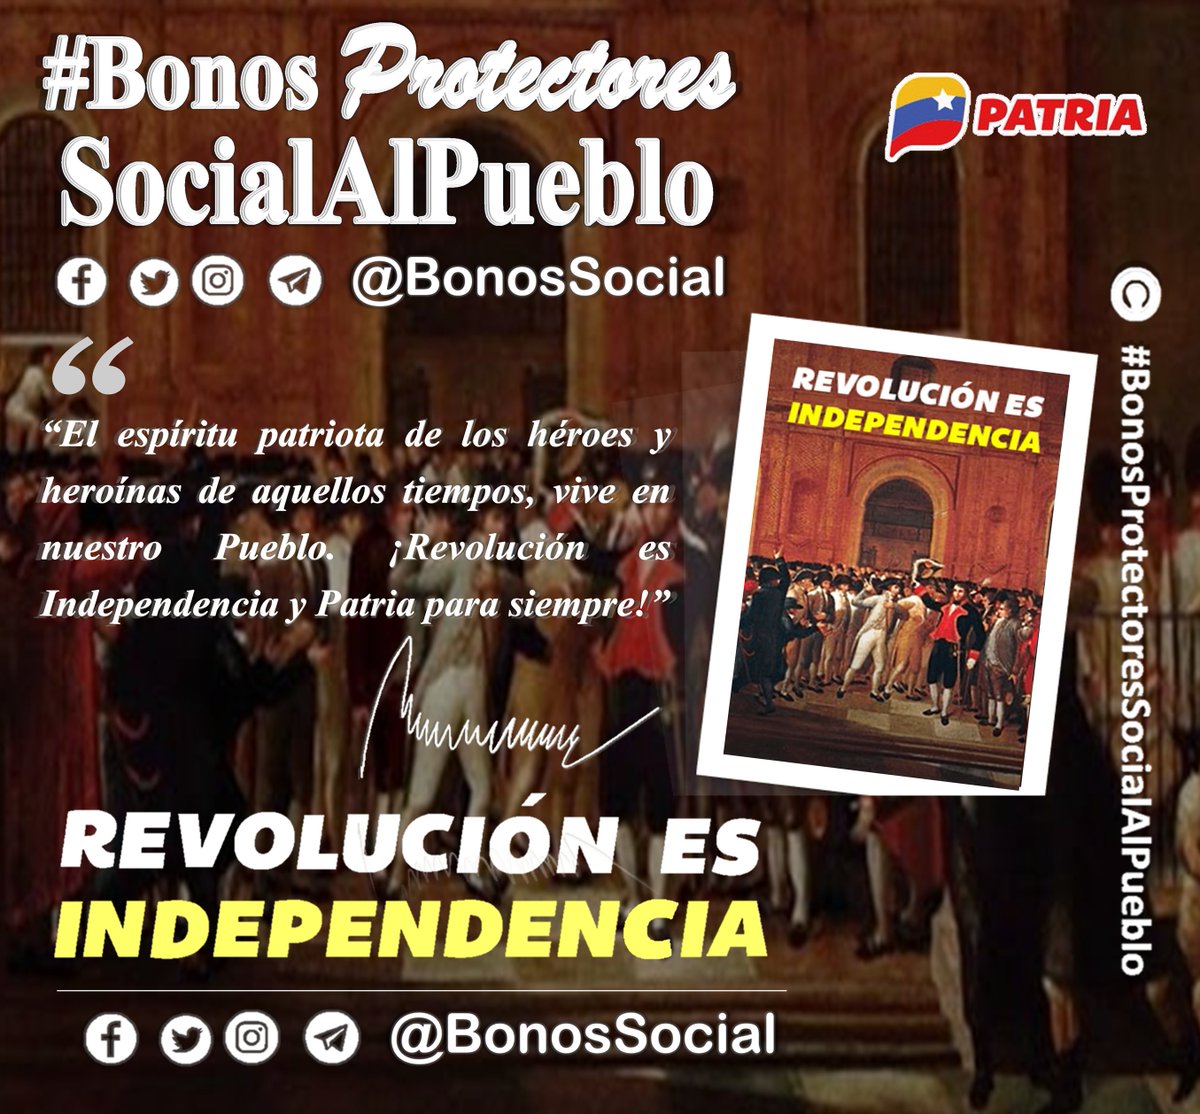 📢 #PENDIENTE: Al finalizar la entrega del Bono #RevoluciónEsIndependencia que culmina hoy #29Abr el Sistema @CarnetDLaPatria tiene previsto activar el 1er #BonoEspecial del mes (mayo 2023). ✅ Atentos a la información oficial del #BlogPatria. @BonosSocial #ALBAUniónDeportiva